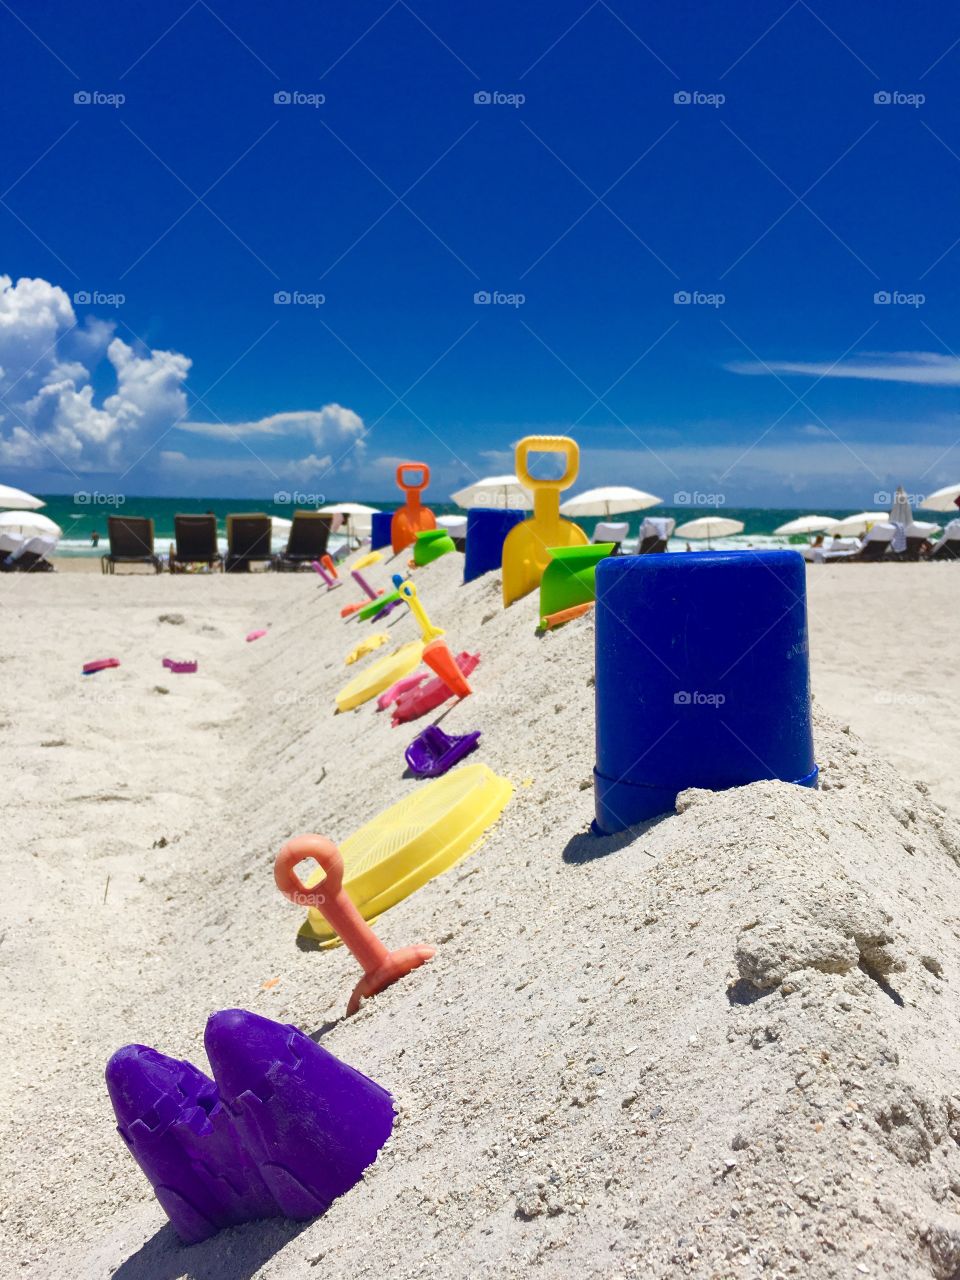 Which beach toy?